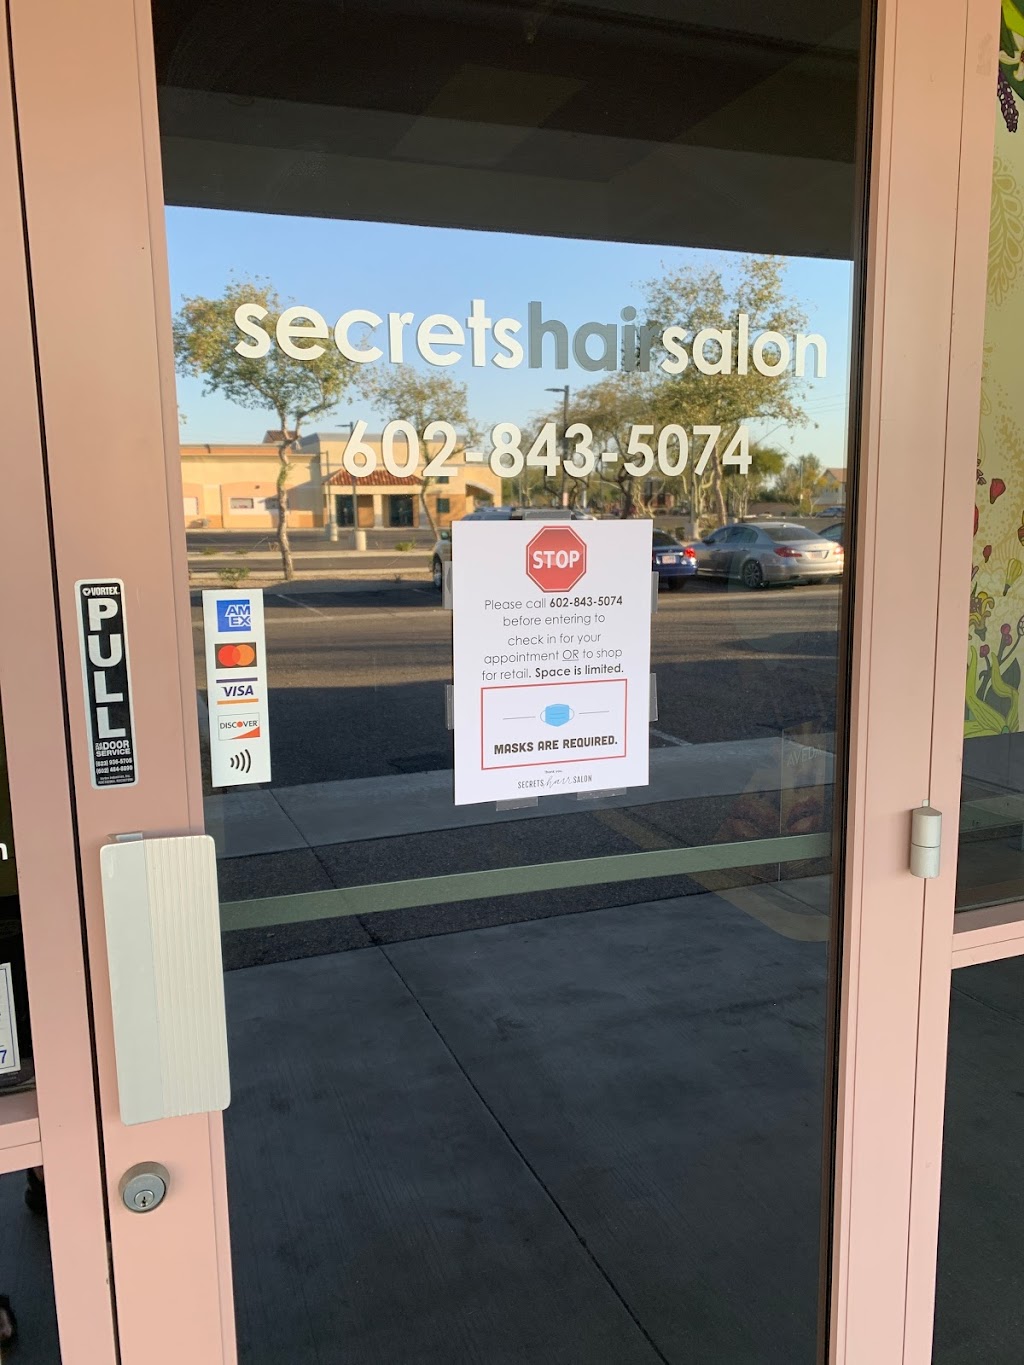 Secrets Hair Salon | 18555 N 59th Ave, Glendale, AZ 85308 | Phone: (602) 843-5074